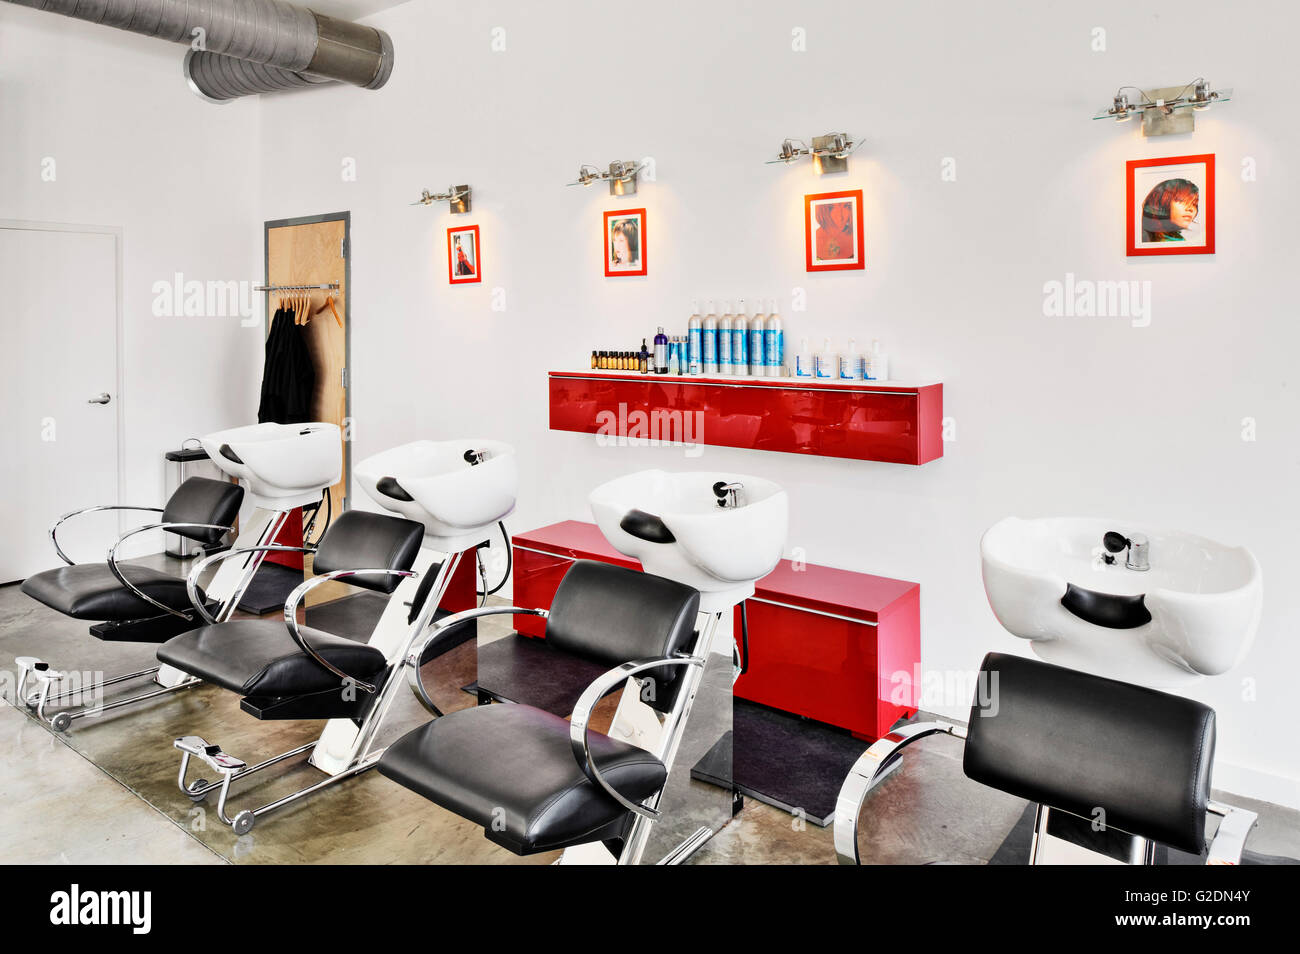 Puits de laver les cheveux et des chaises dans un salon de coiffure Banque D'Images